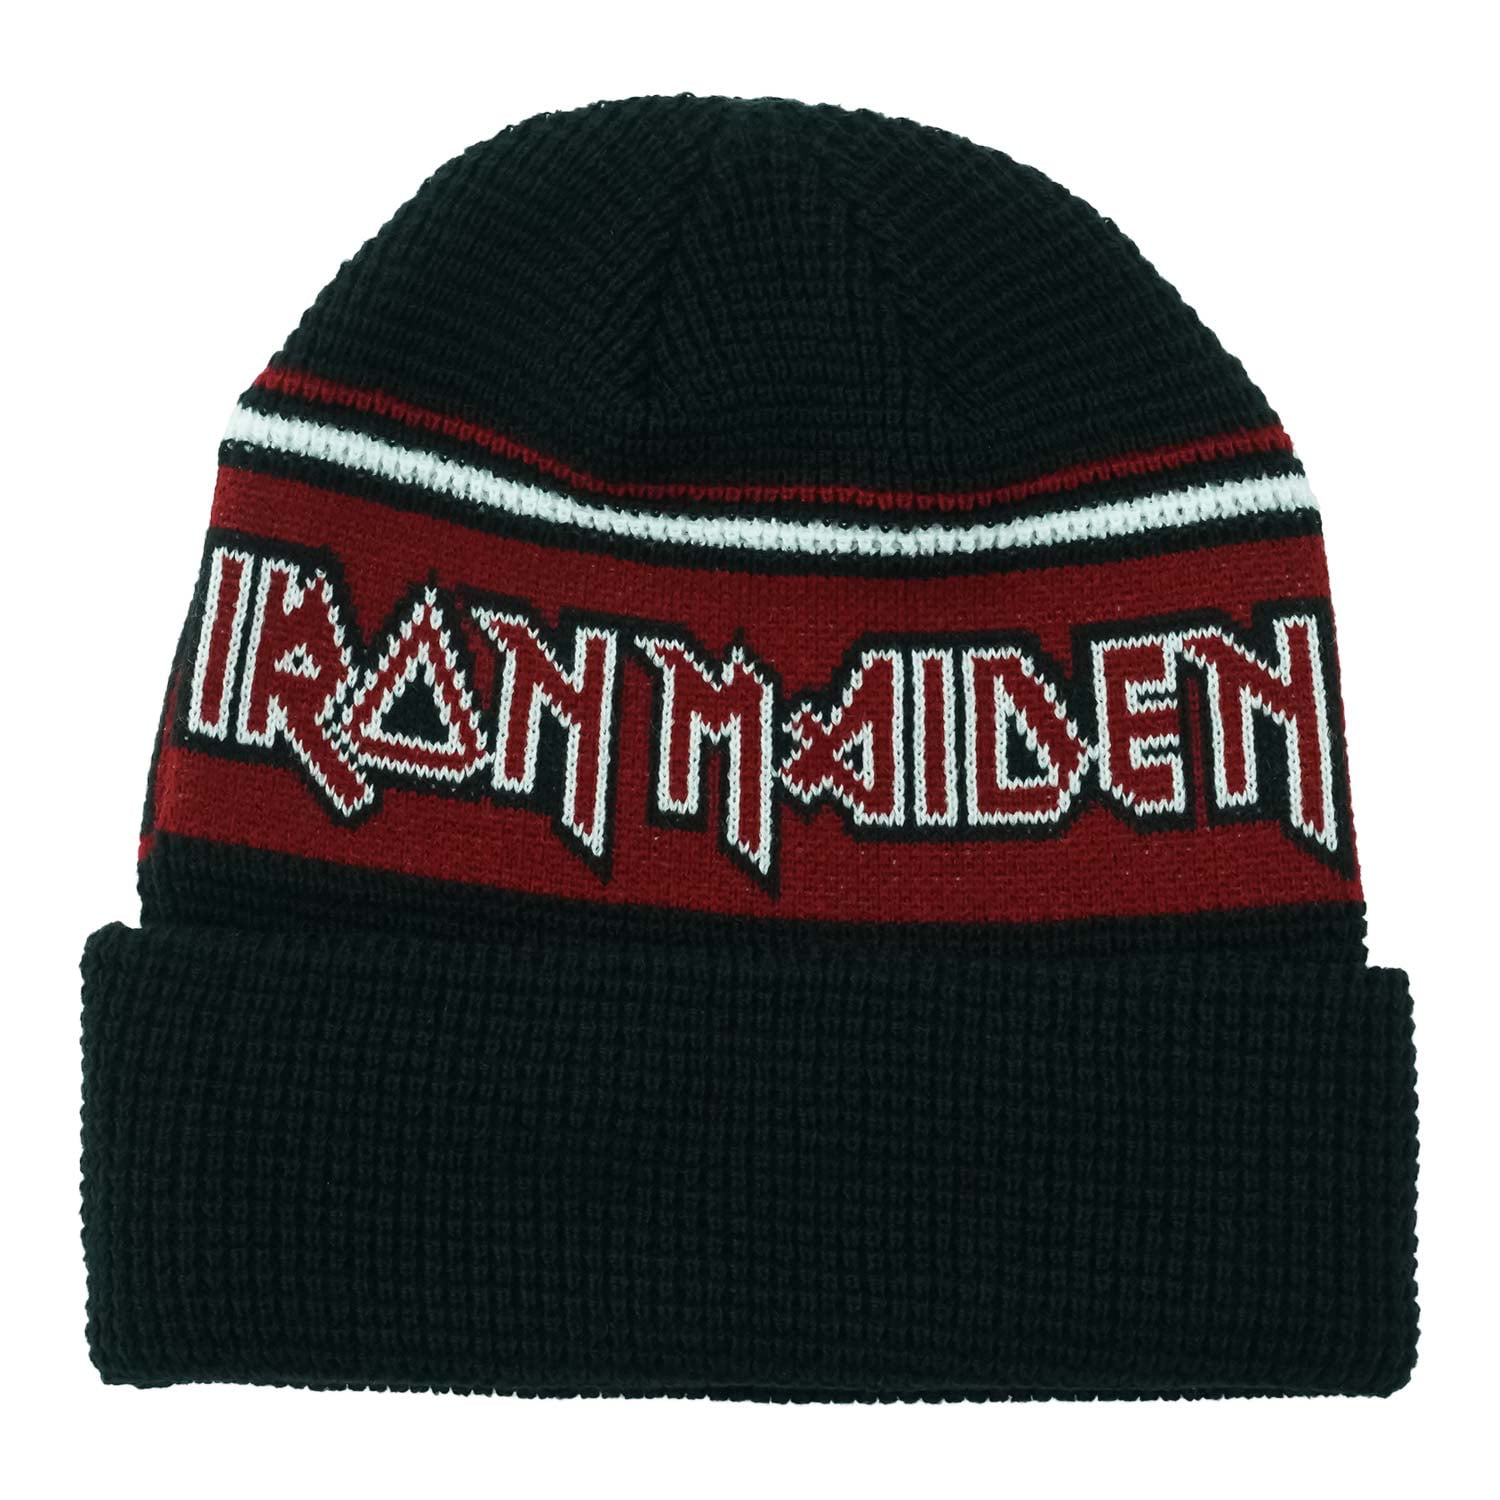 Iron Maiden - Iron Maiden Men's Logo Beanie Black - Walmart.com ...